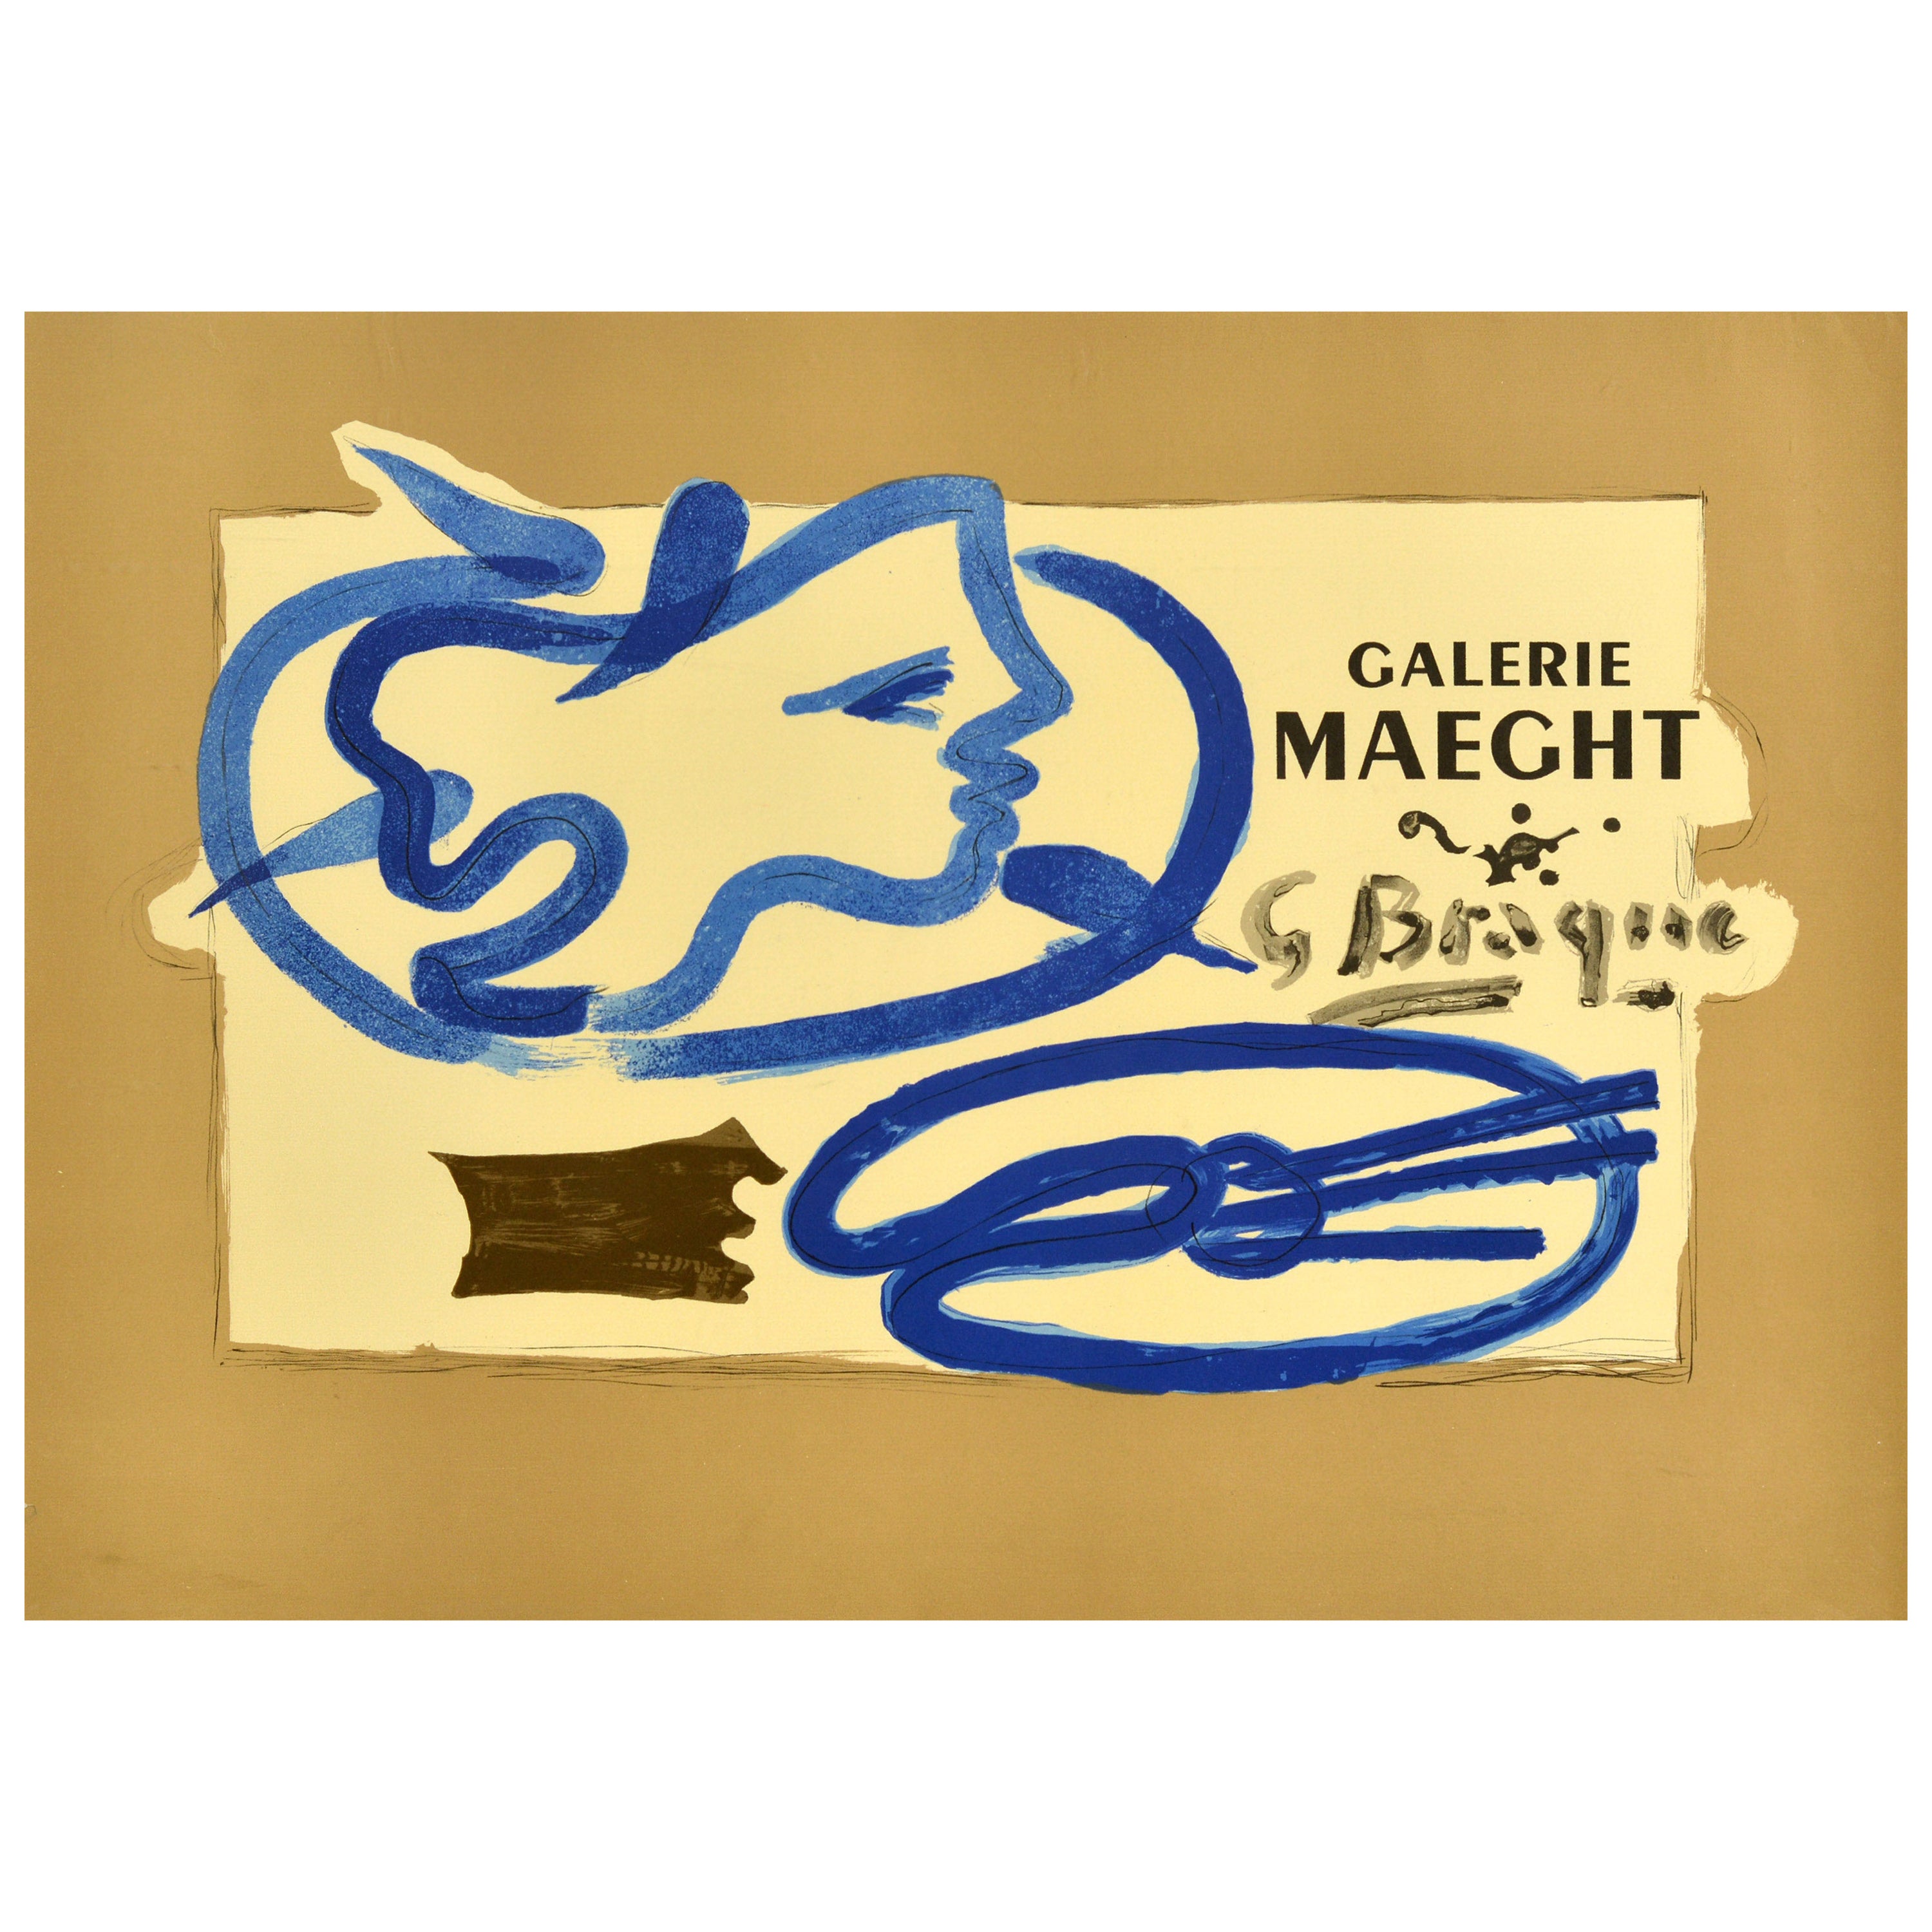 Original-Vintage-Werbeplakat, Vintage-Kunstausstellung, Georges Braque Galerie Maeght